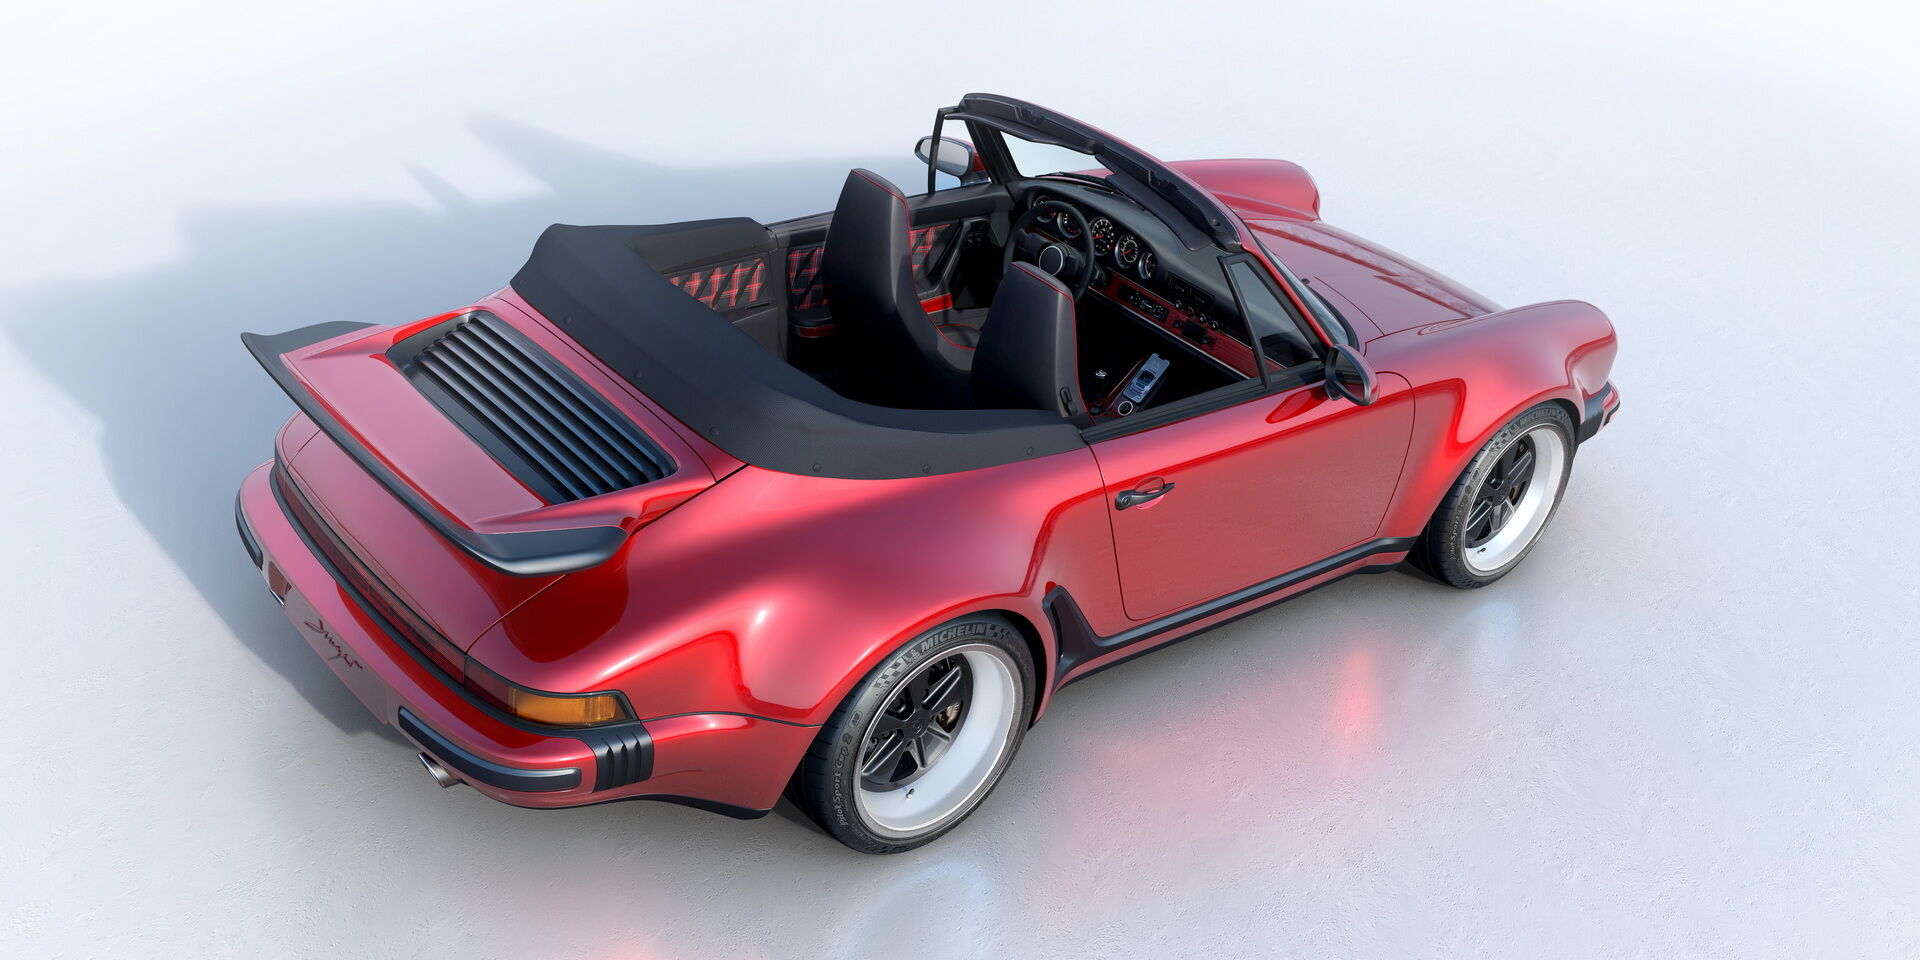 Кузов новинки виготовлений з карбонового волокна, а дизайн є сучасним втіленням класичного Porsche 930 Turbo